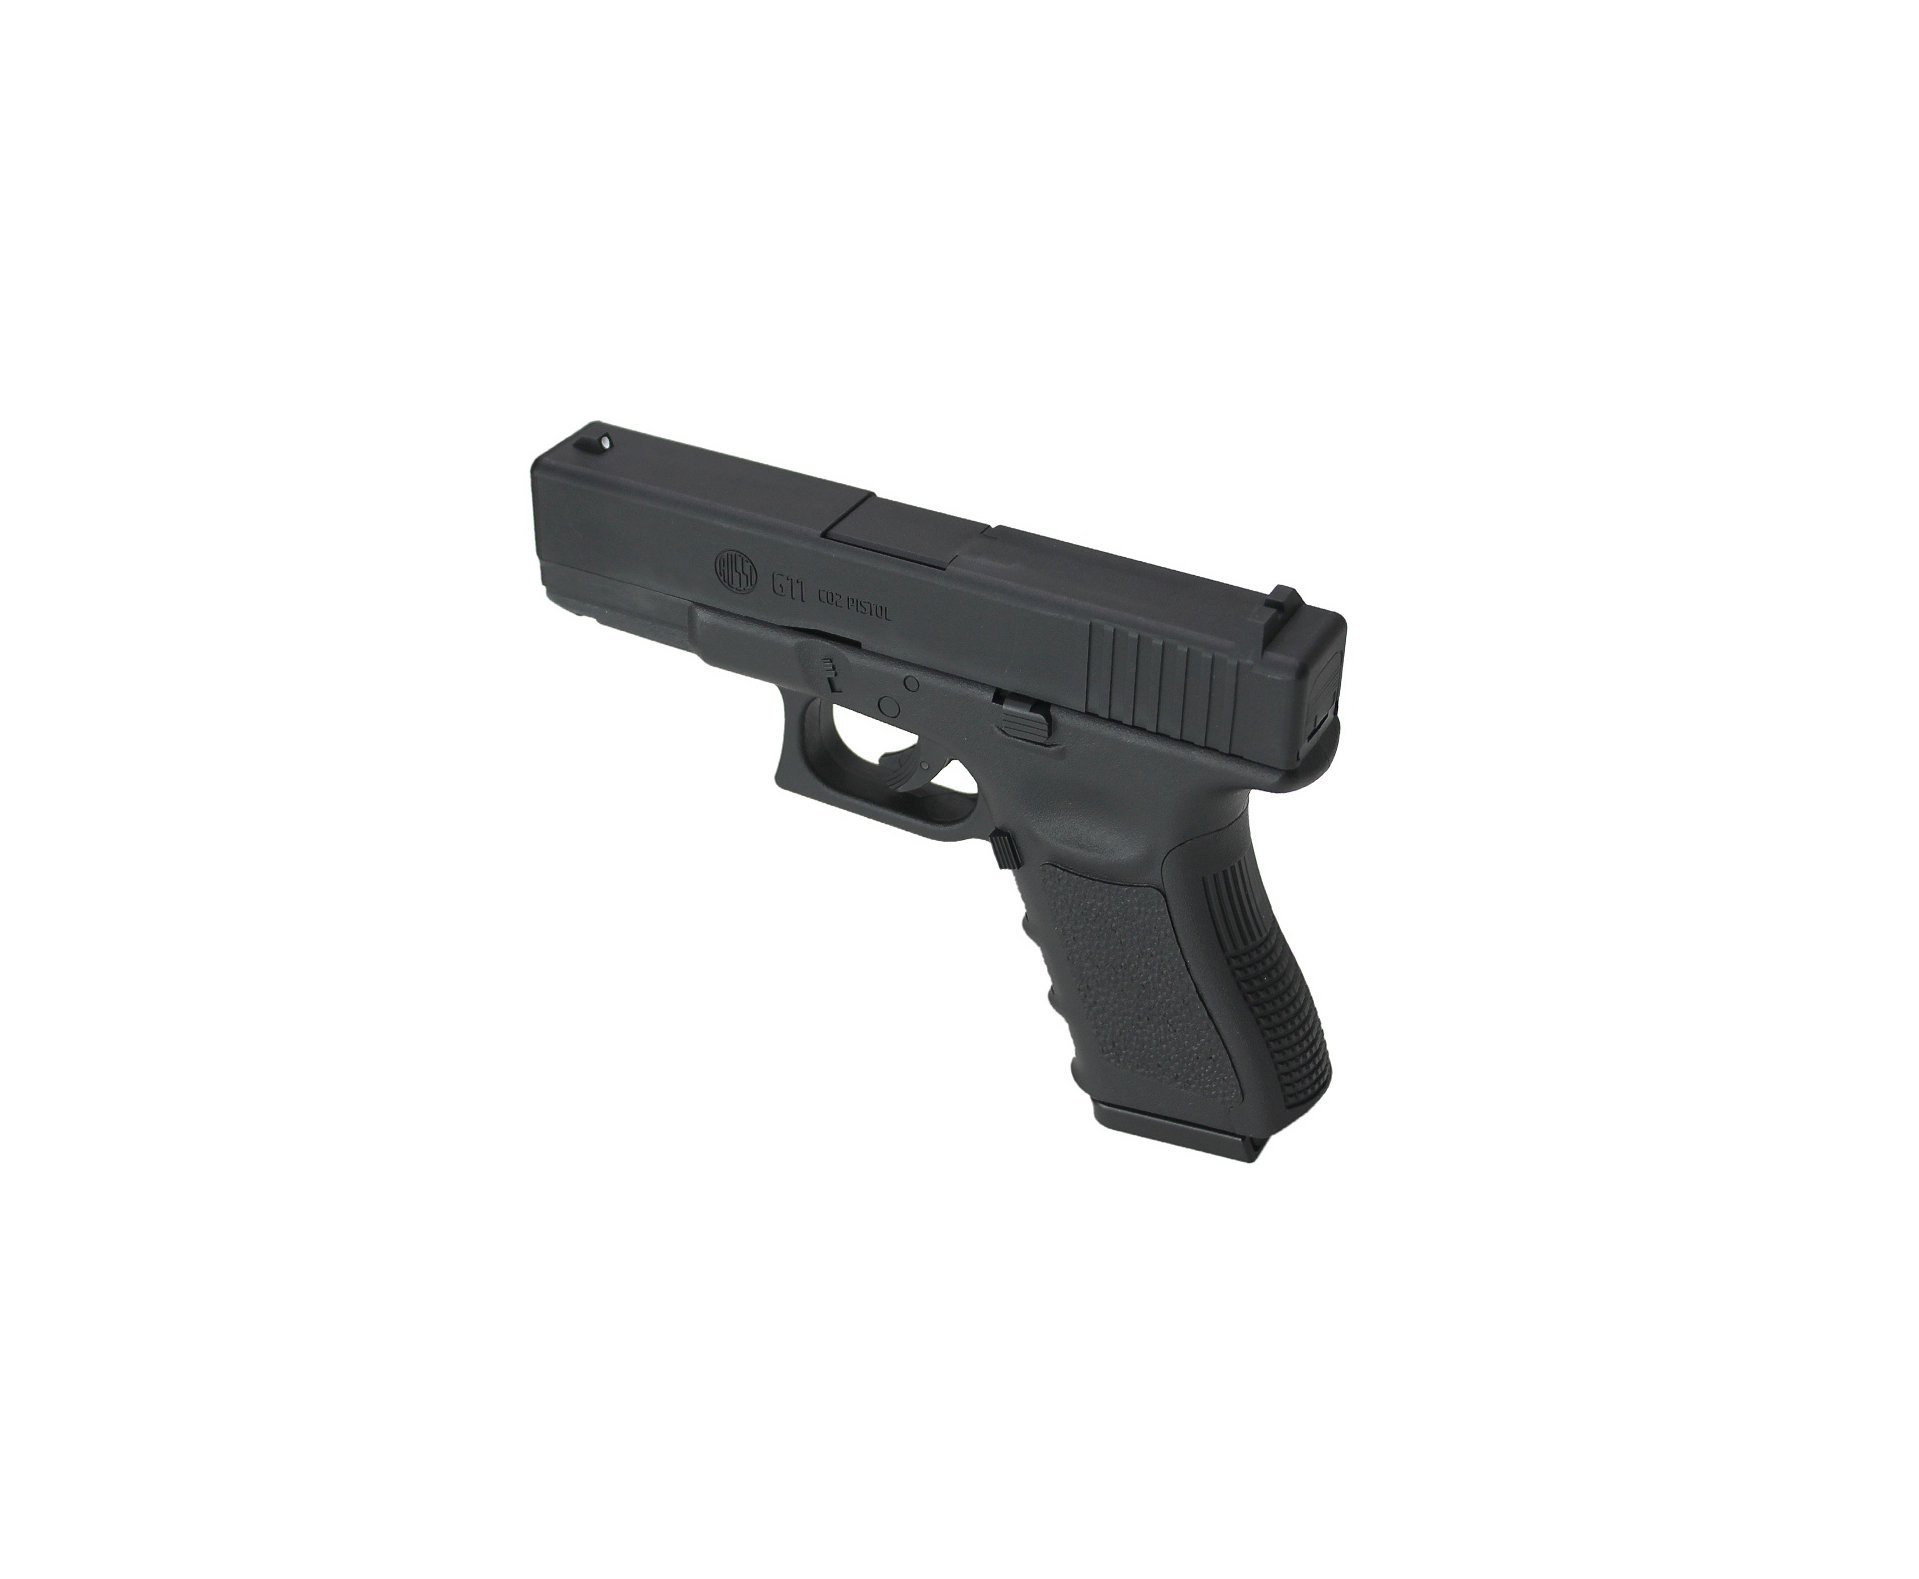 Artefato de Pressão Rossi G11 4,5mm Glock 19 NBB ABS